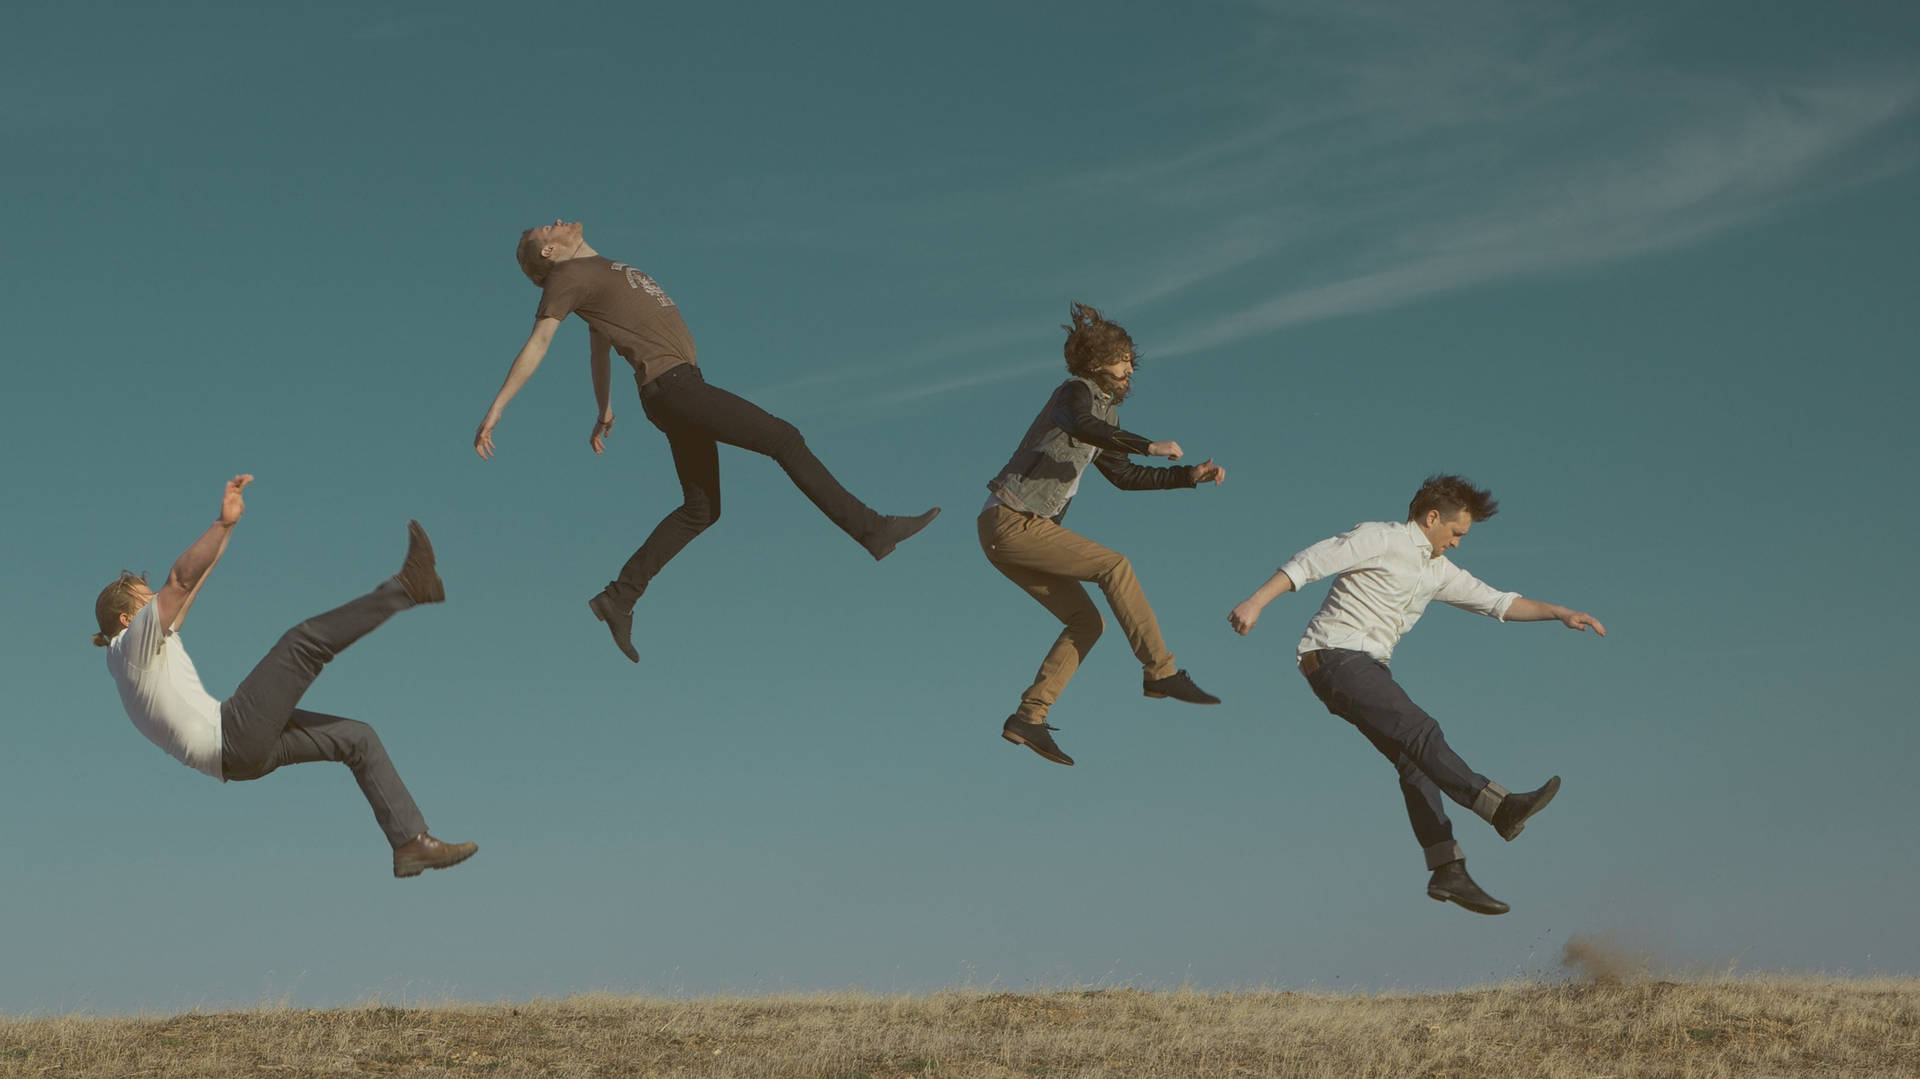 Einegruppe Von Menschen Springt In Die Luft. Wallpaper